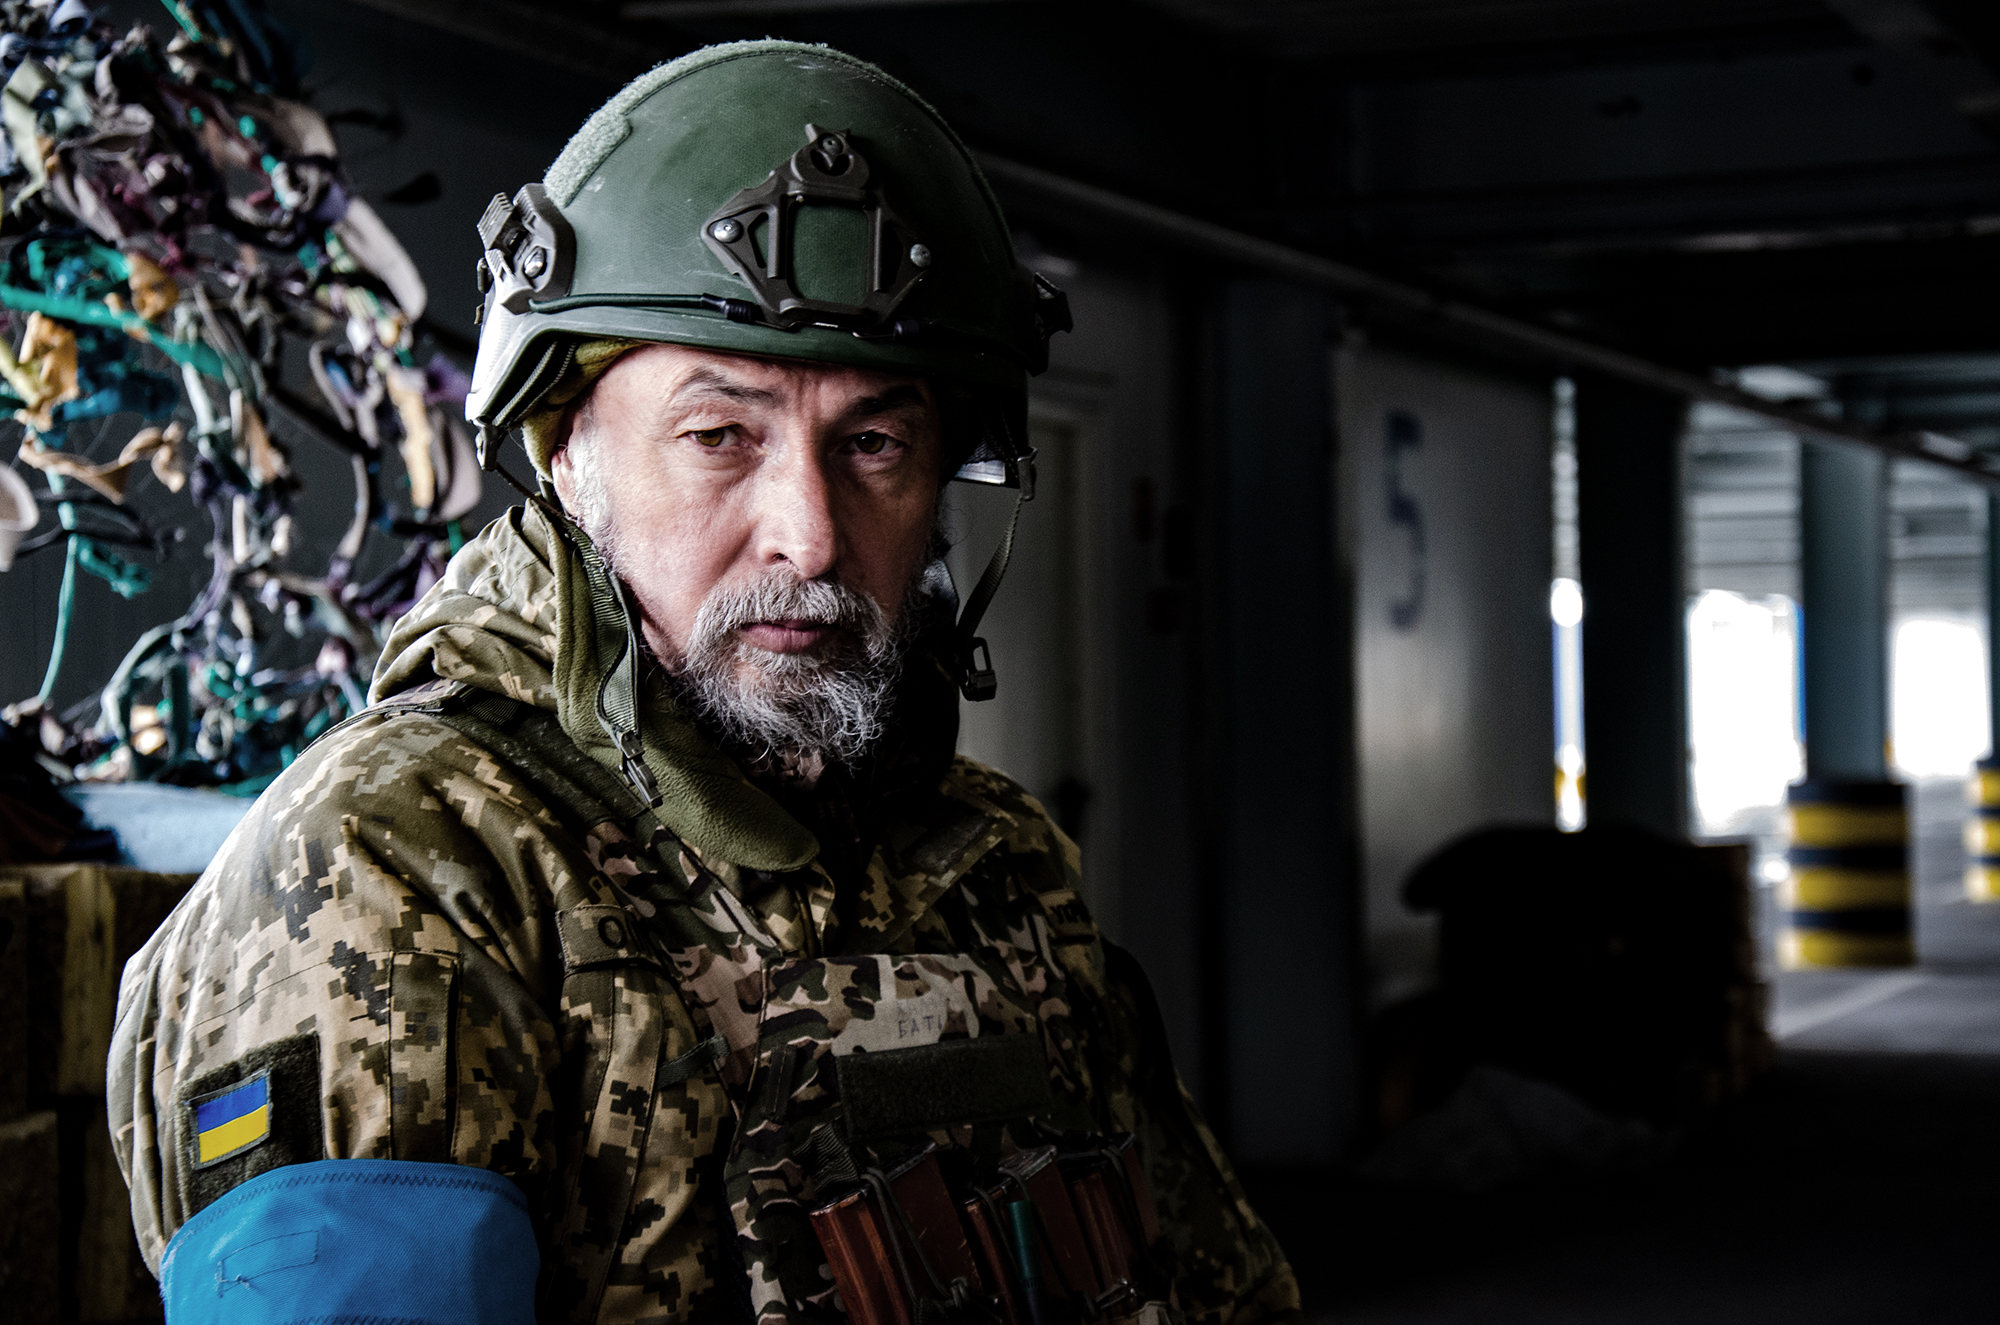 Філософський батальйон. Як комунікаційник, історик та авіаінженер захищають Київ